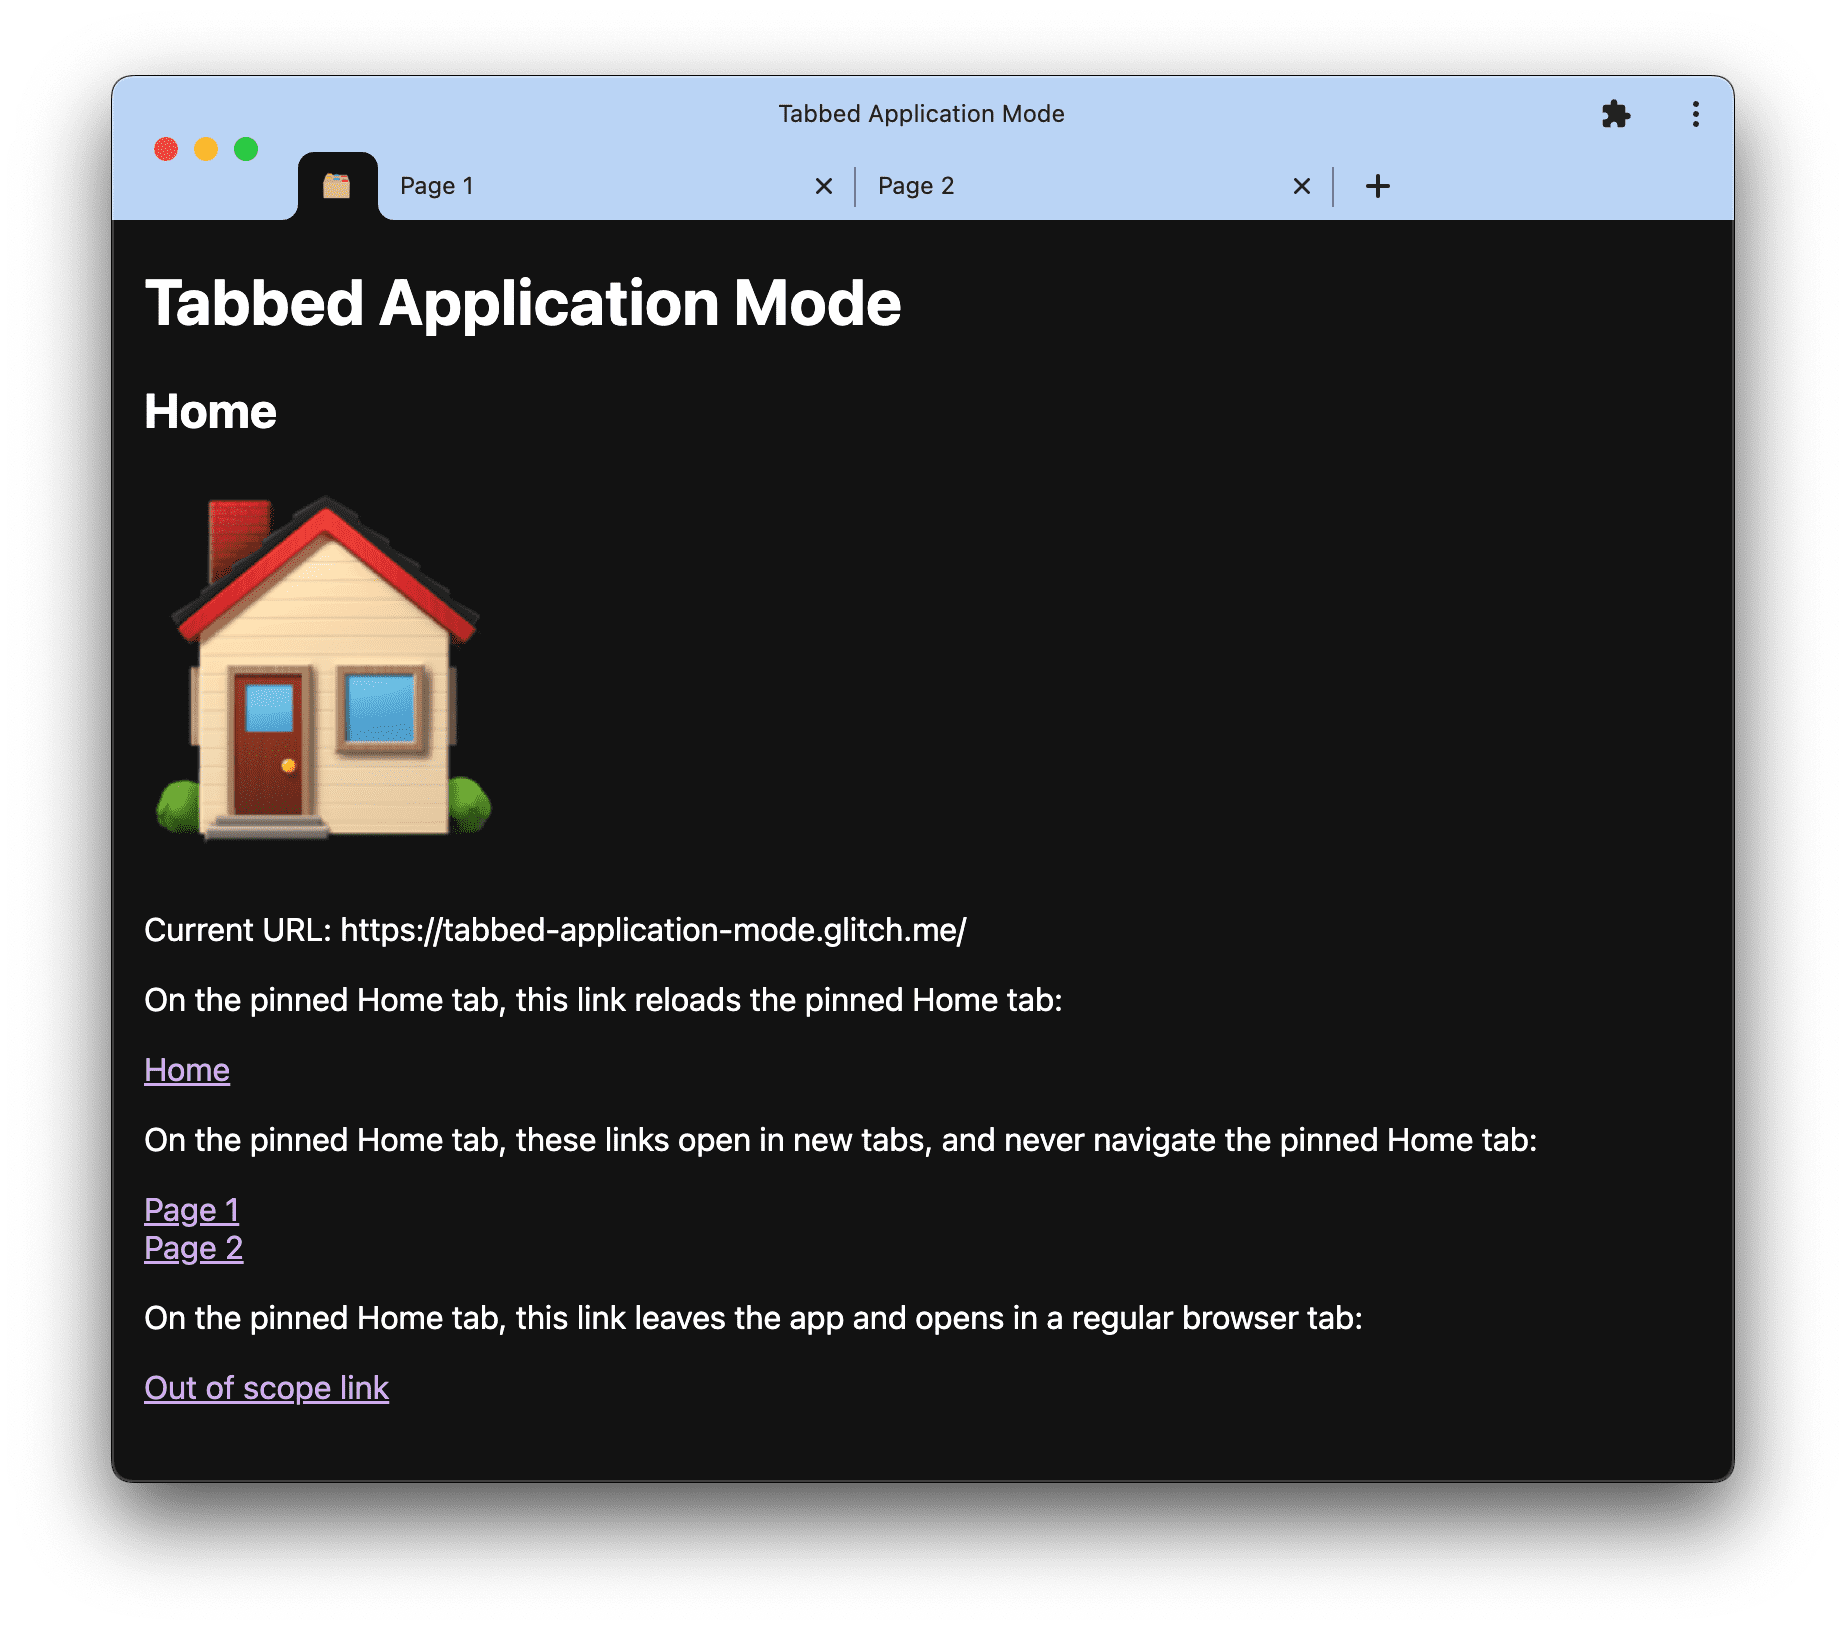 Schermafbeelding van de demo van de applicatiemodus met tabbladen op tabbed-application-mode.glitch.me.